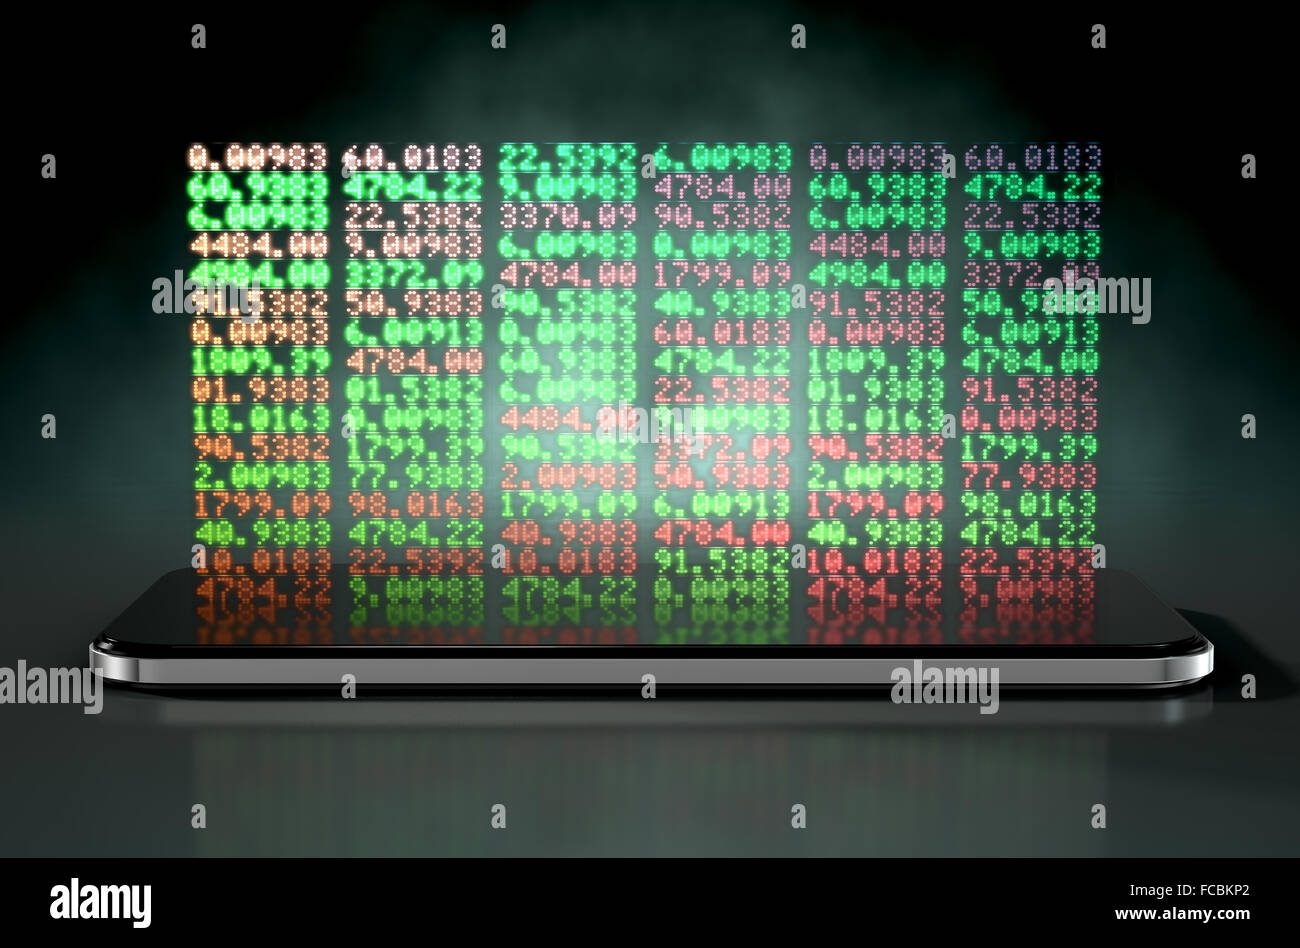 Un smartphone générique projetant un hologramme d'une bourse du Conseil de l'indicateur numérique avec les numéros verts et rouges Banque D'Images